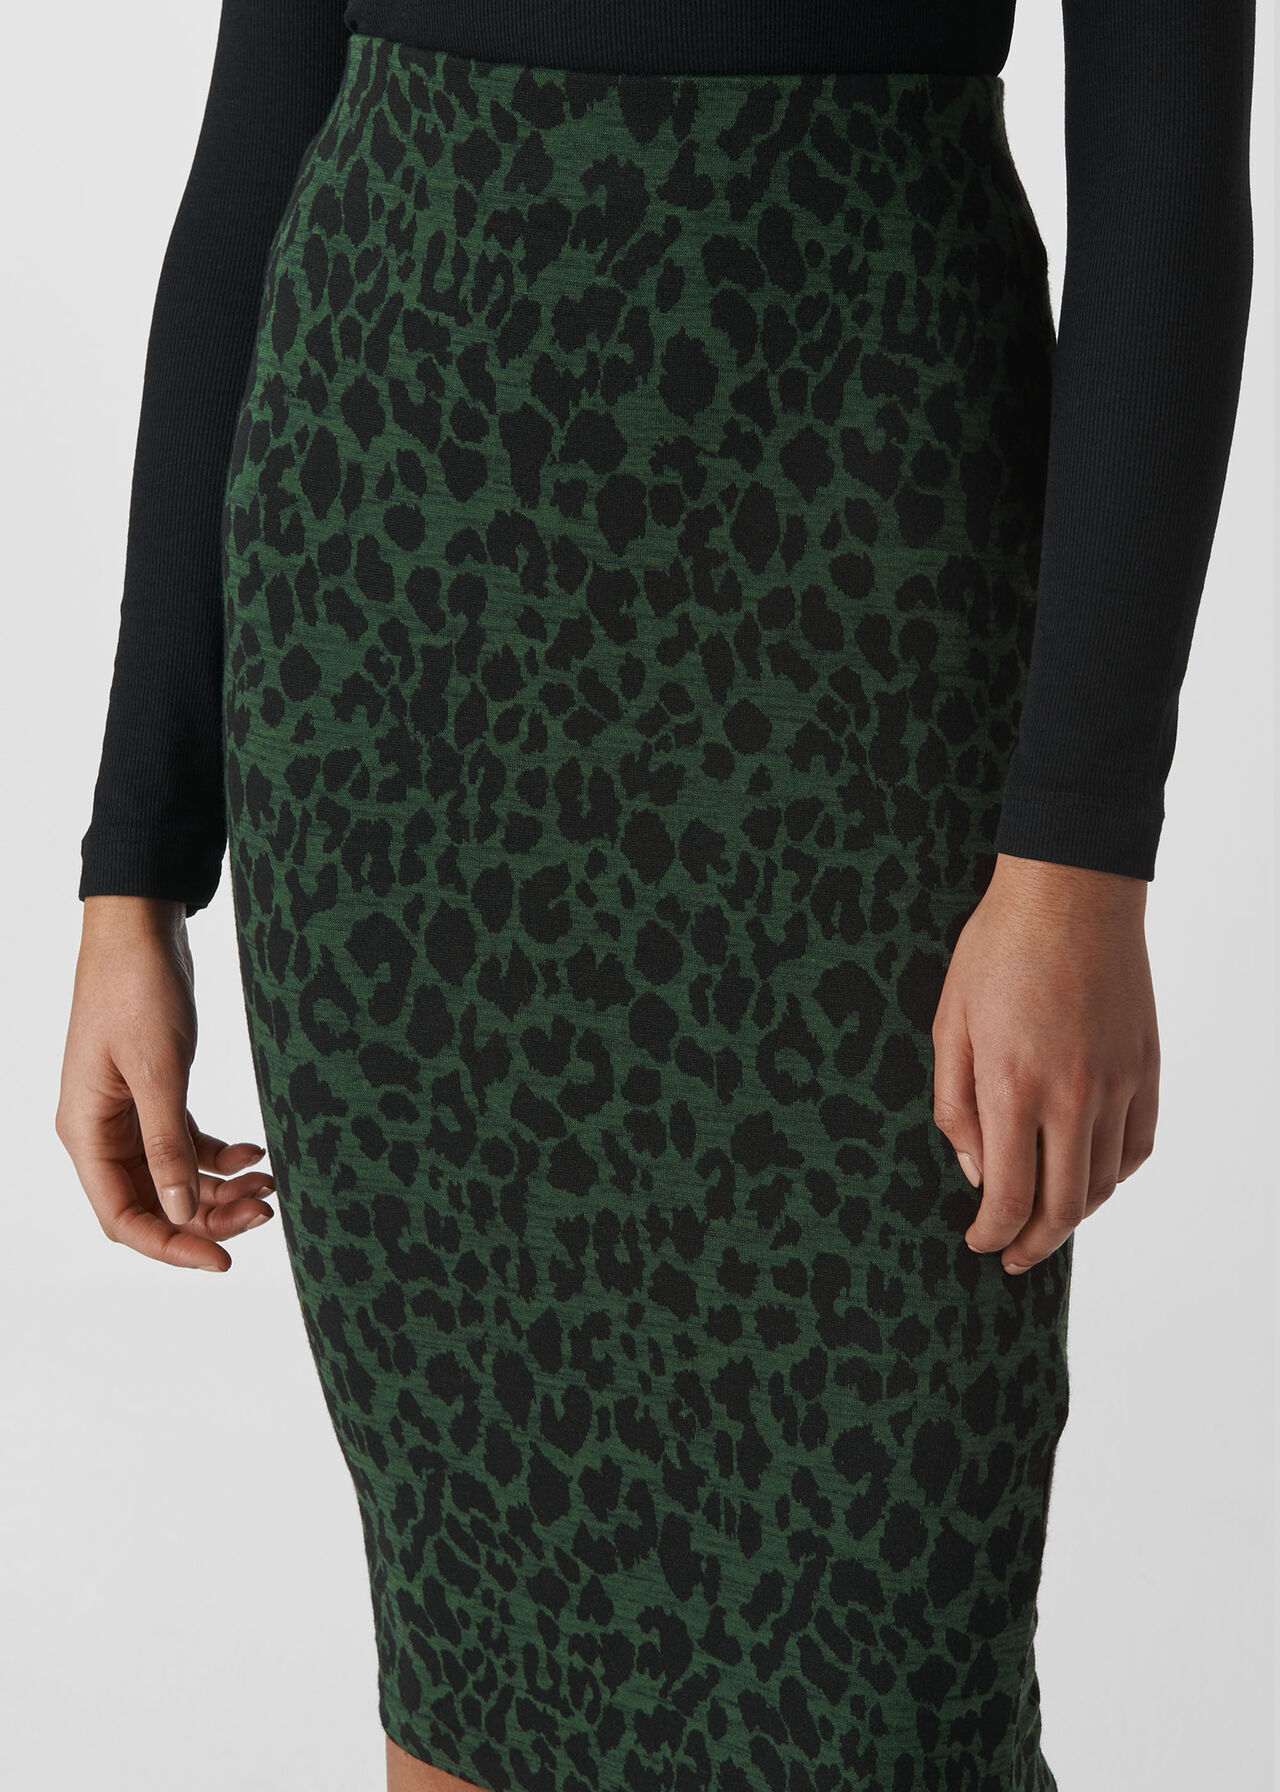 Animal Jacquard Tube Skirt Green/Multi